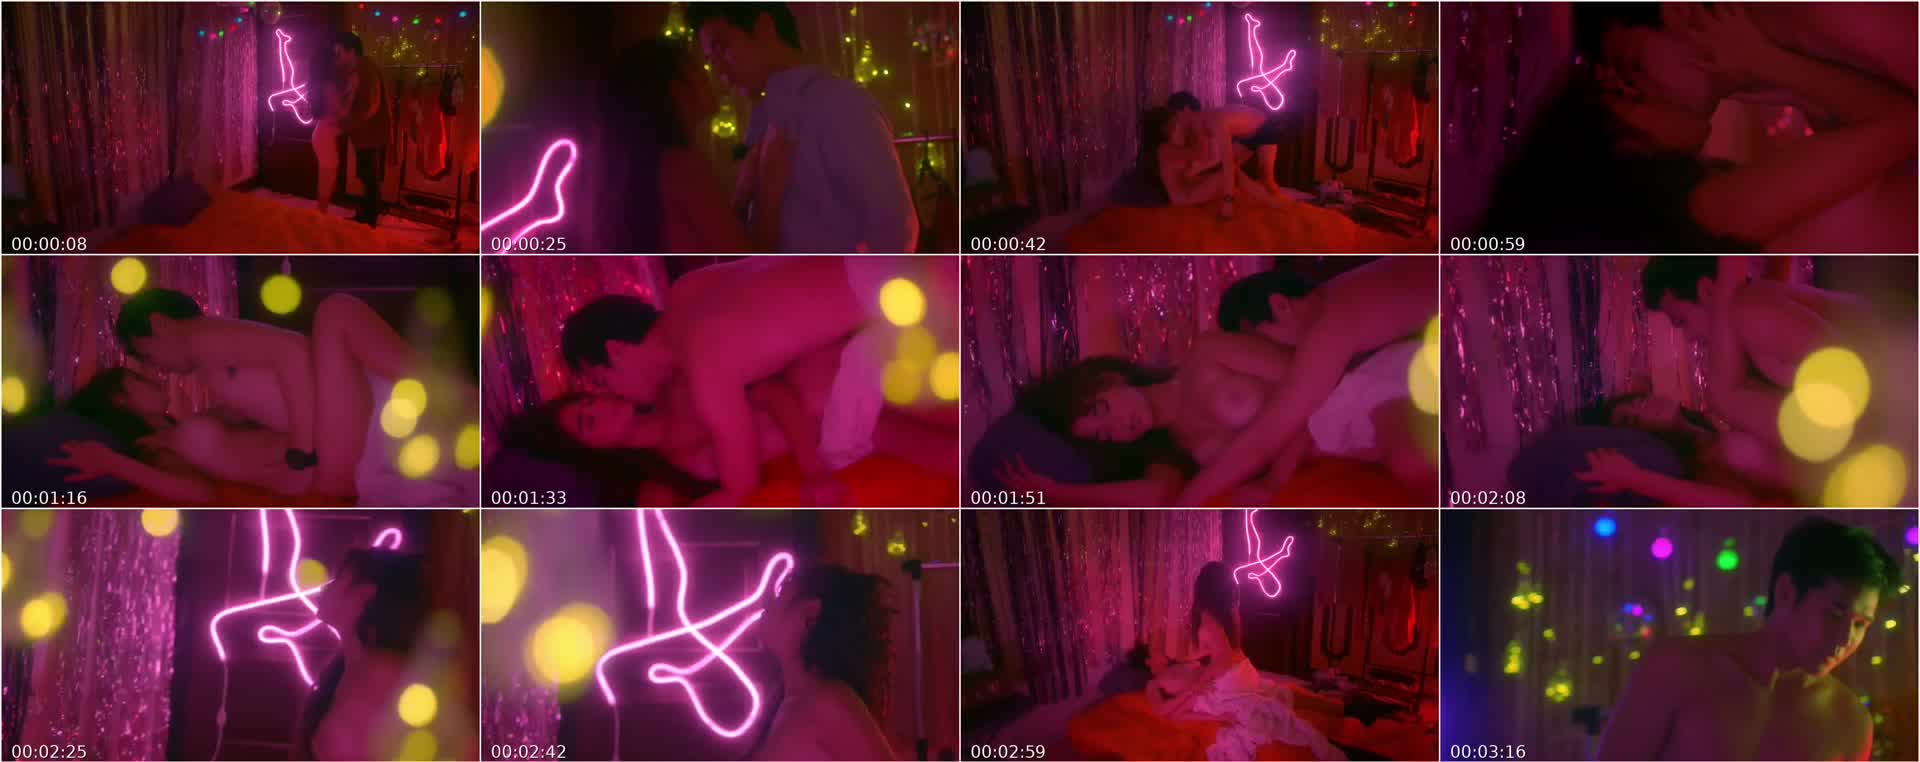 Palihim niLive sa FB Ang SEX Video, Kalat na Kalat!